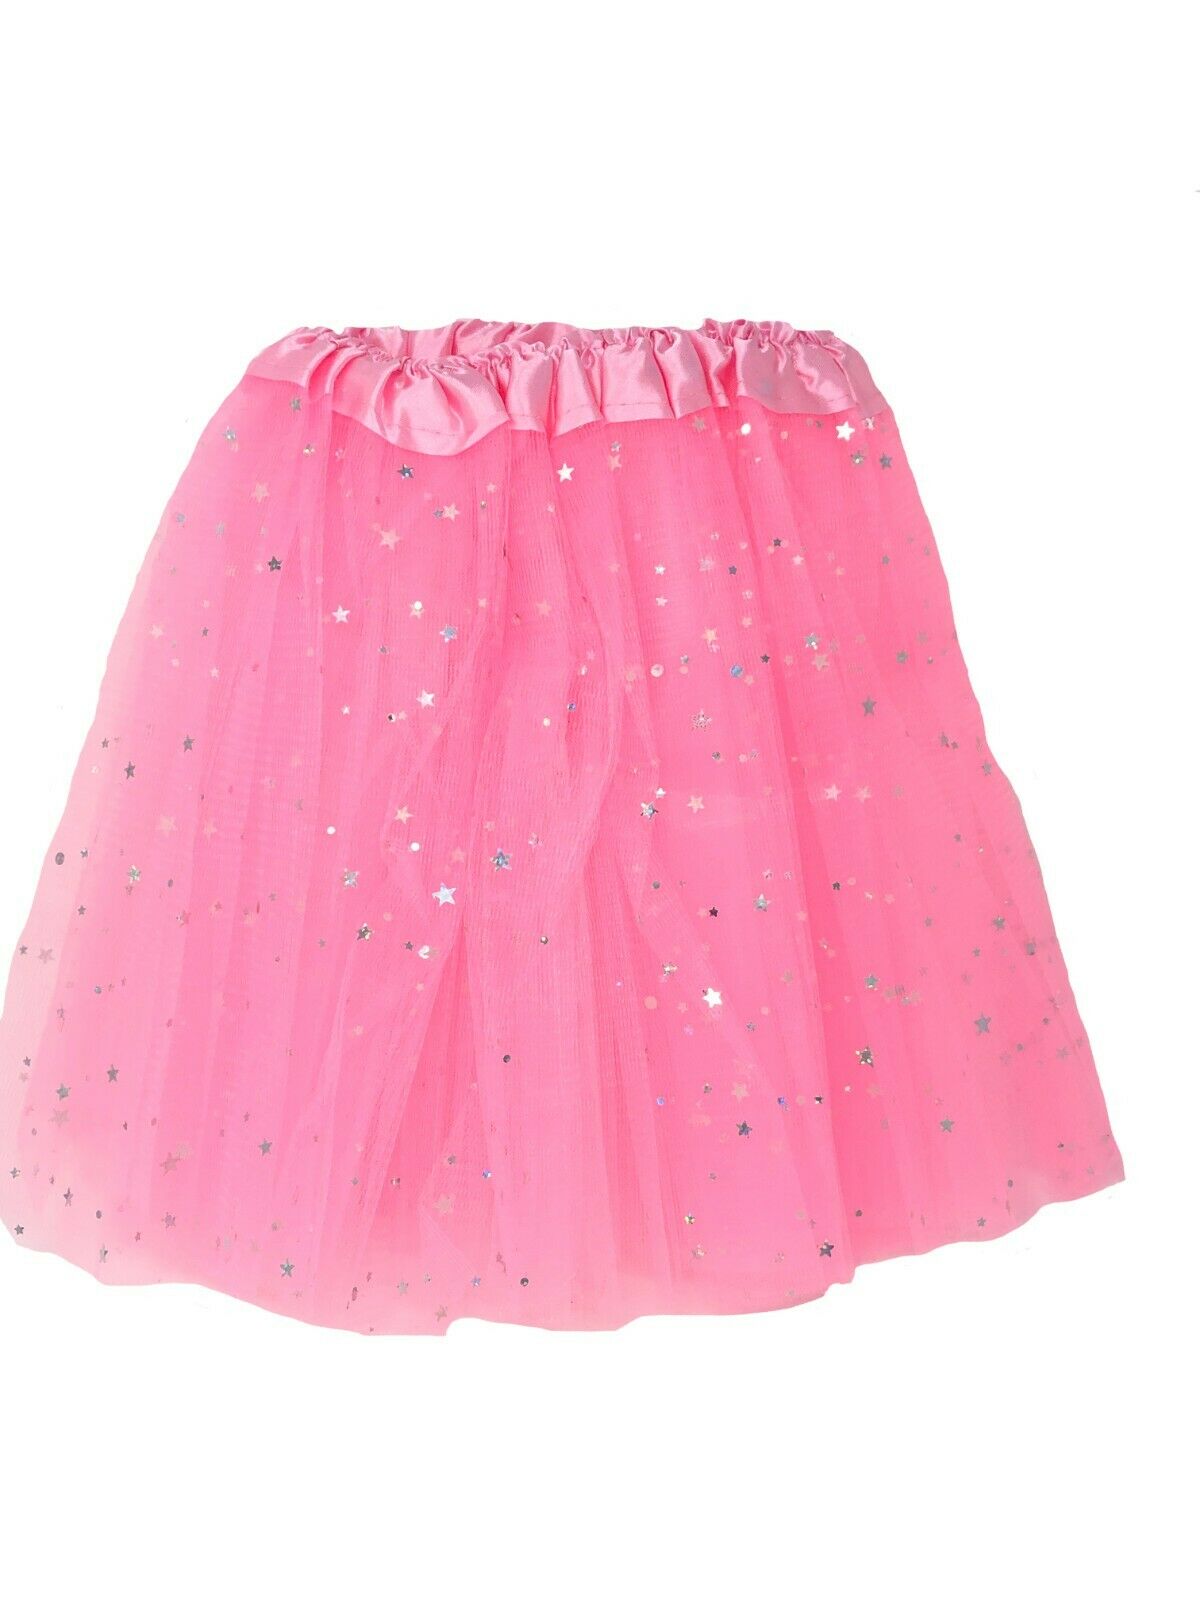 Girls Tutu Net Skirt Silver Sparkly Stars Fancy Dress Ballet Dress Up ...